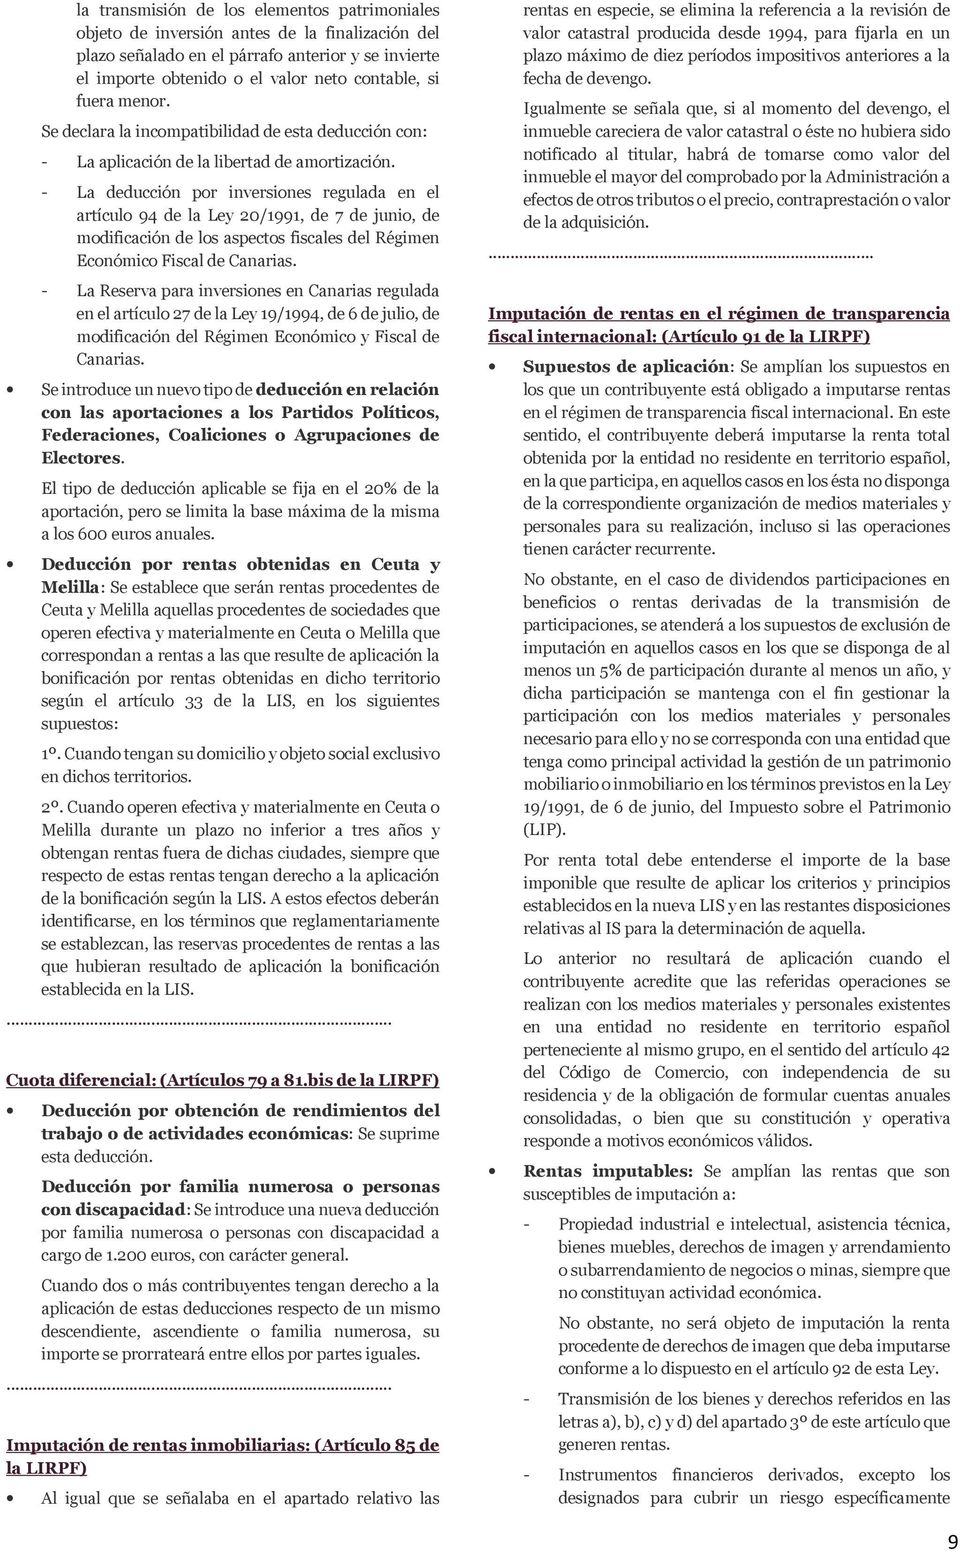 - La deducción por inversiones regulada en el artículo 94 de la Ley 20/1991, de 7 de junio, de modificación de los aspectos fiscales del Régimen Económico Fiscal de Canarias.